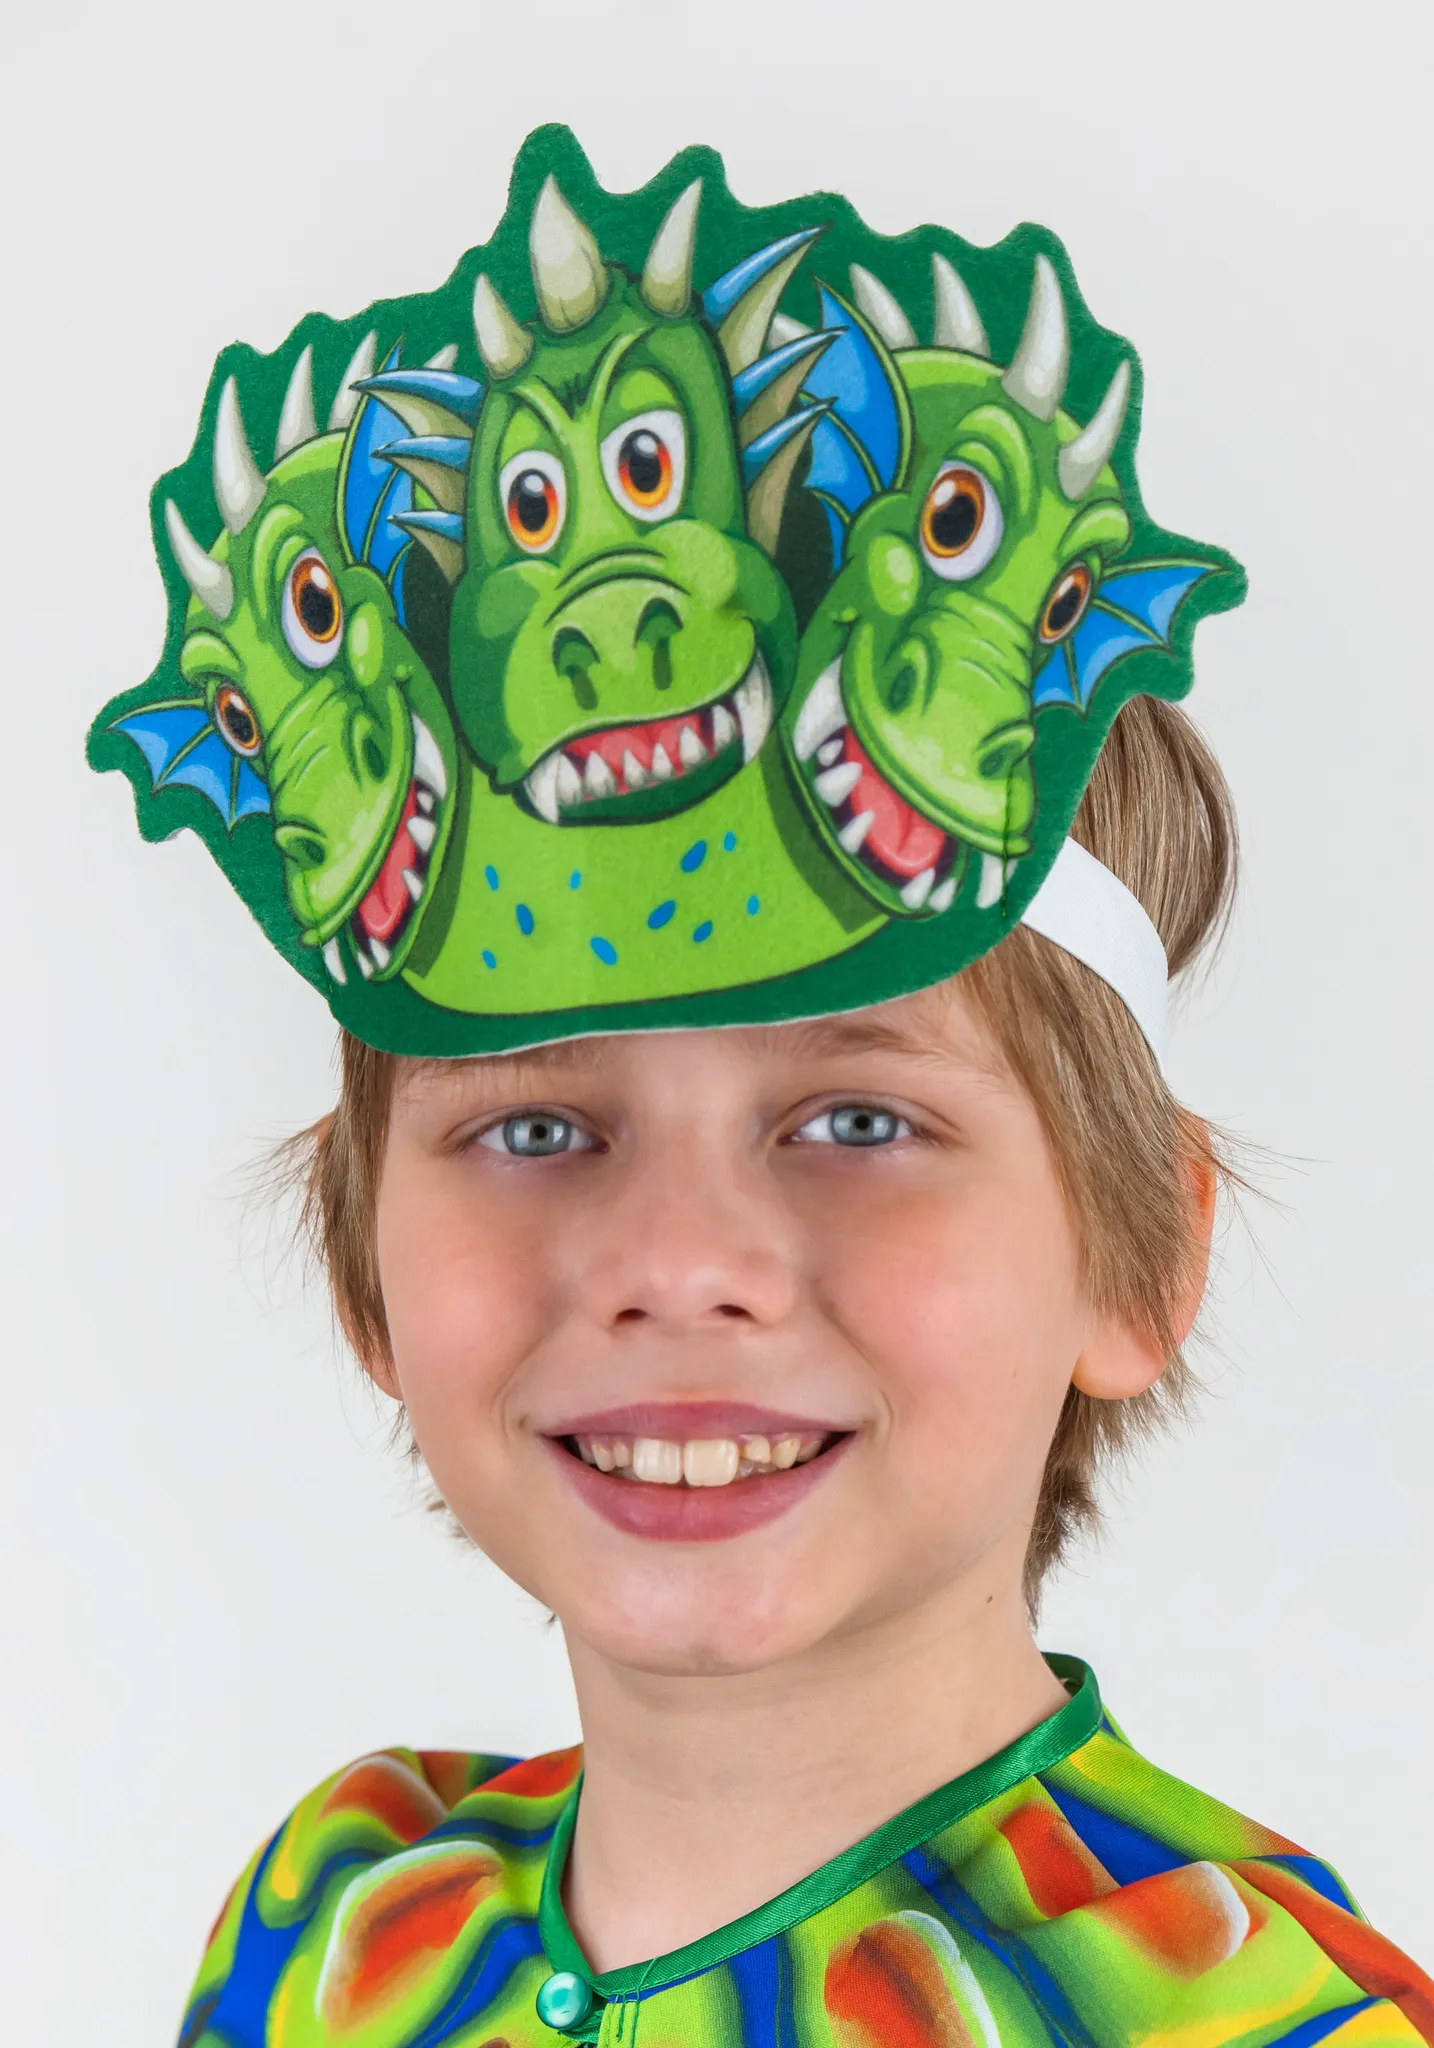 Шоу маска горыныч 7 выпуск. Змей Горыныч маска. Дети в карнавальных костюмах змея. Карнавальная маска змеи. Маска дракона.